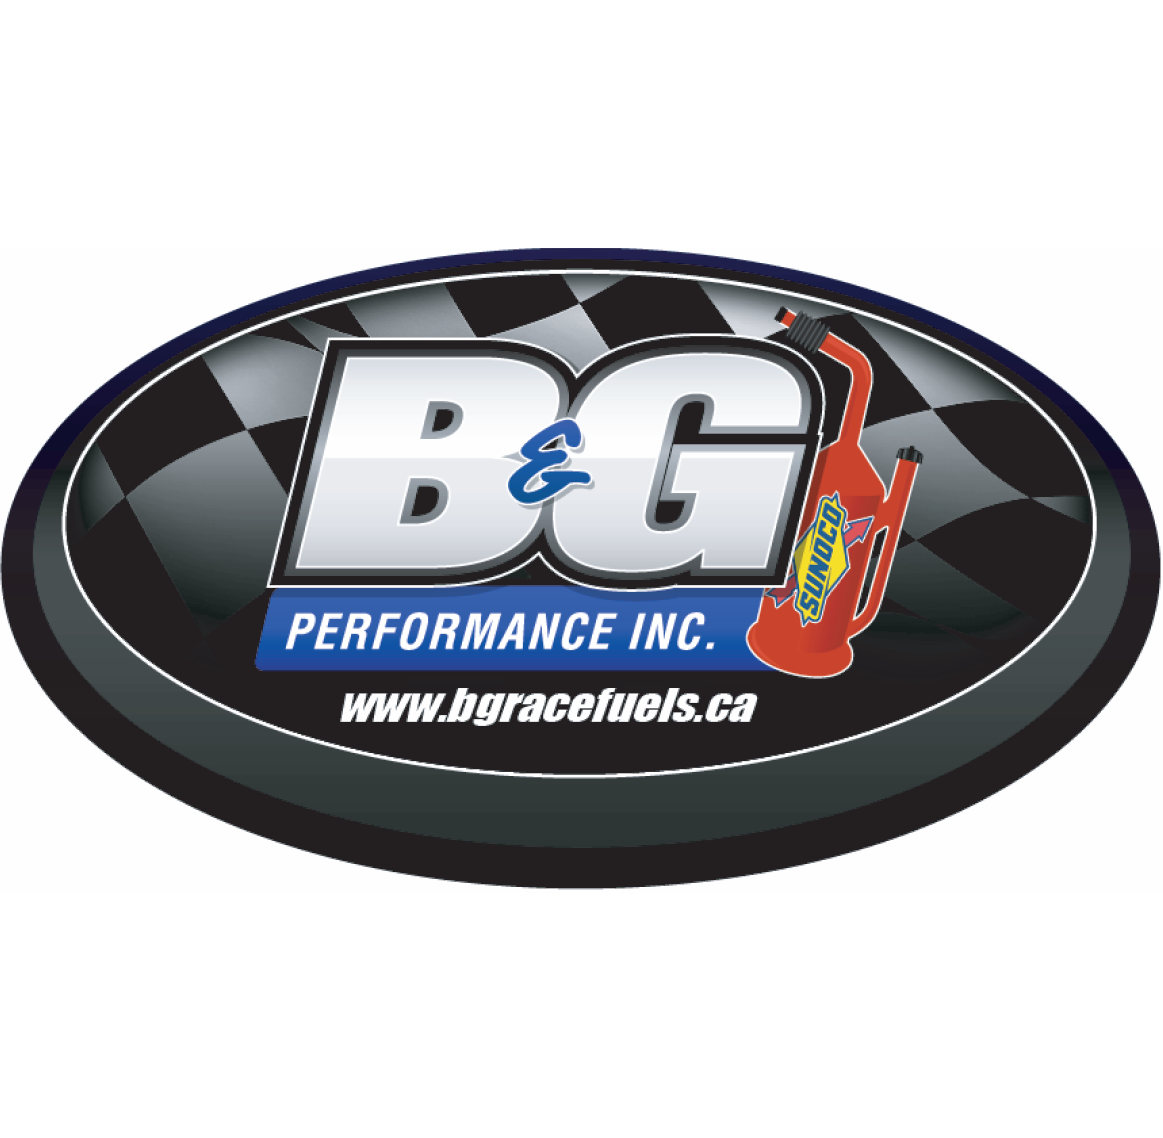 B&G Logo